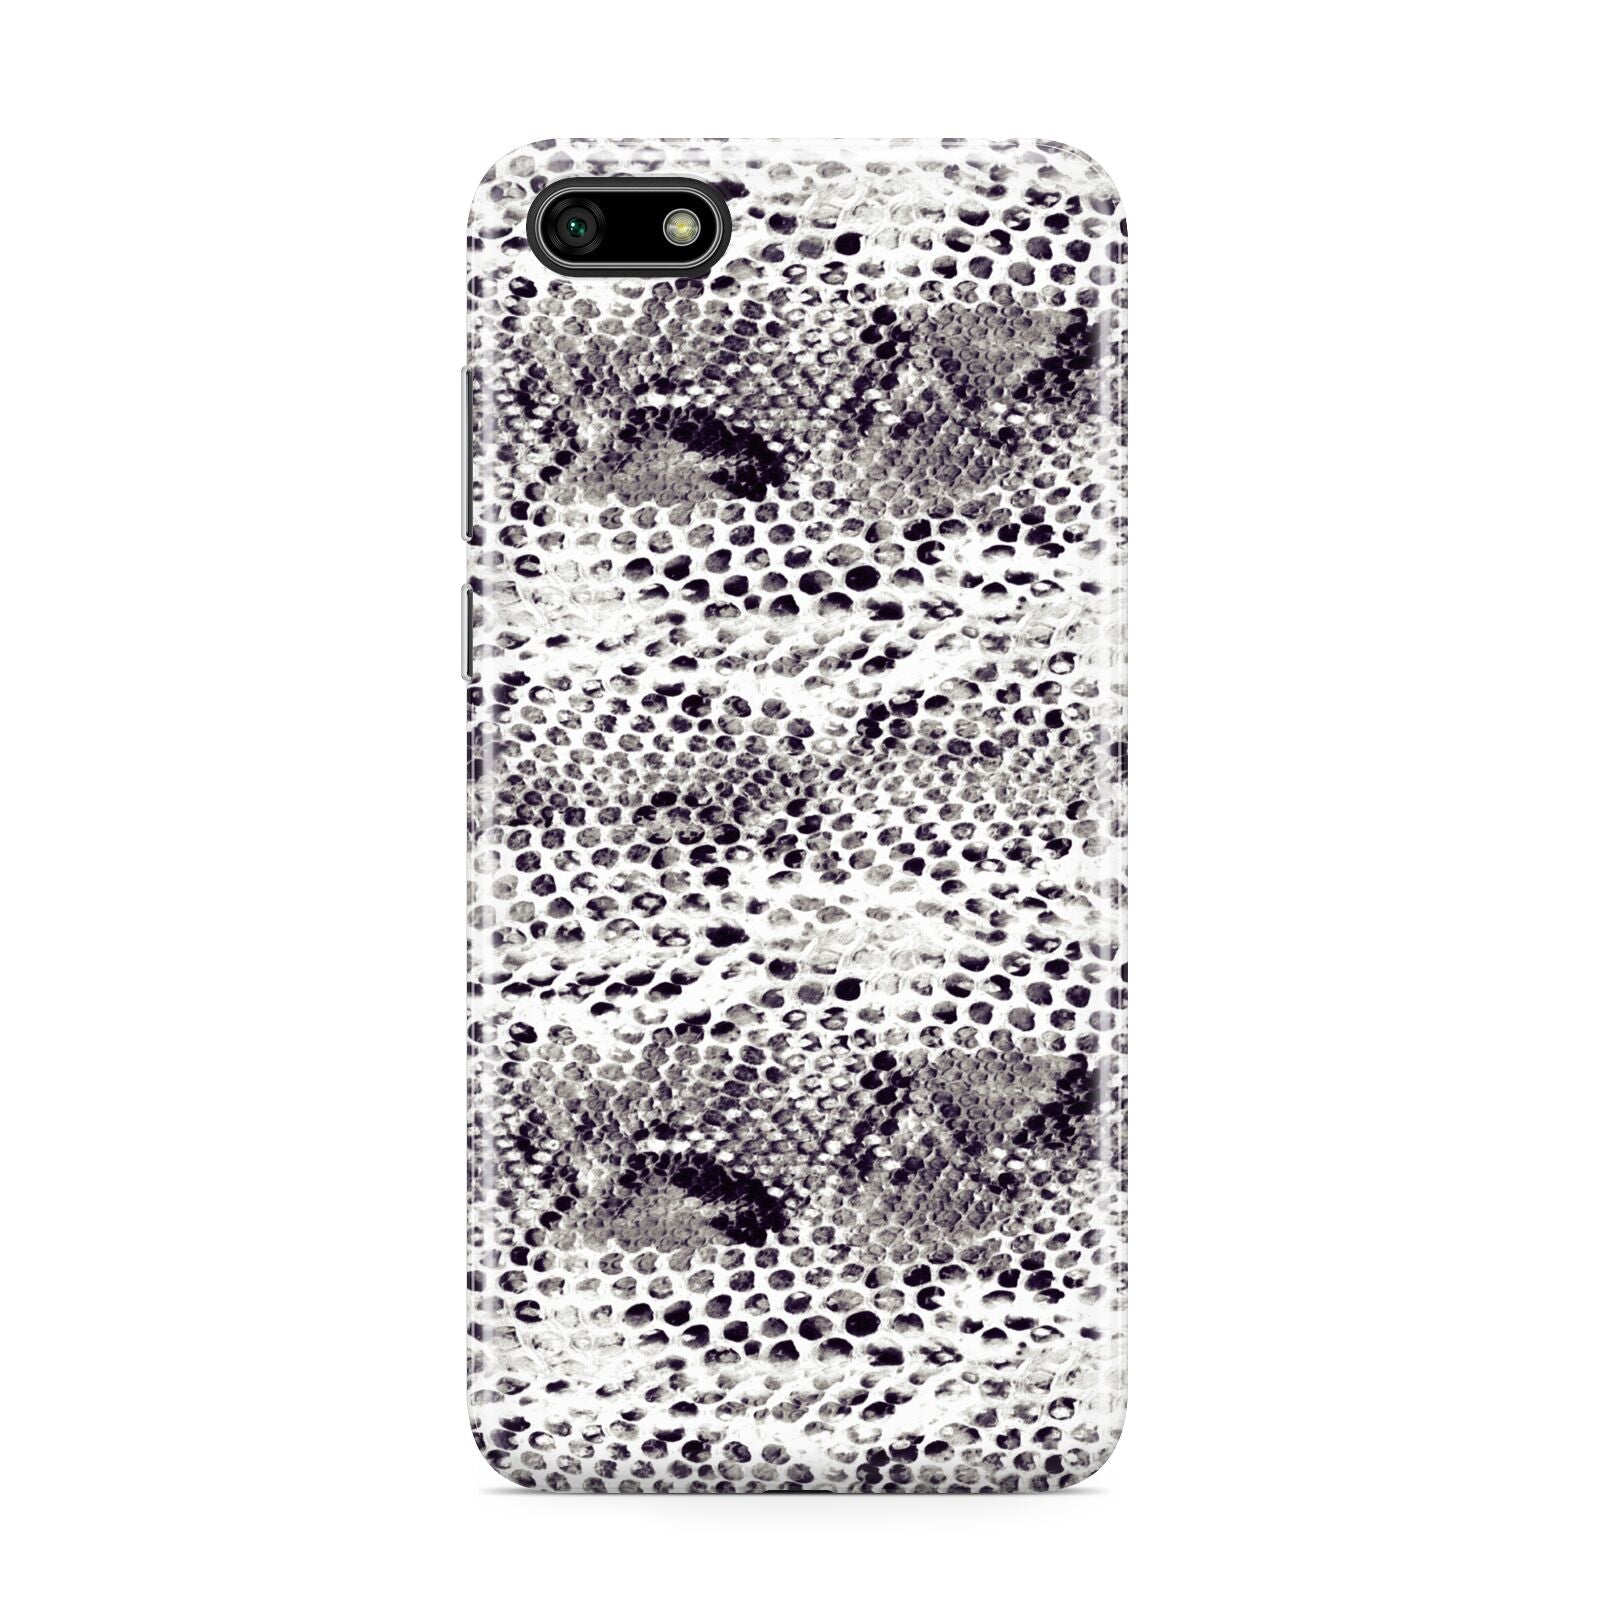 Textured Snakeskin Huawei Y5 Prime 2018 Phone Case